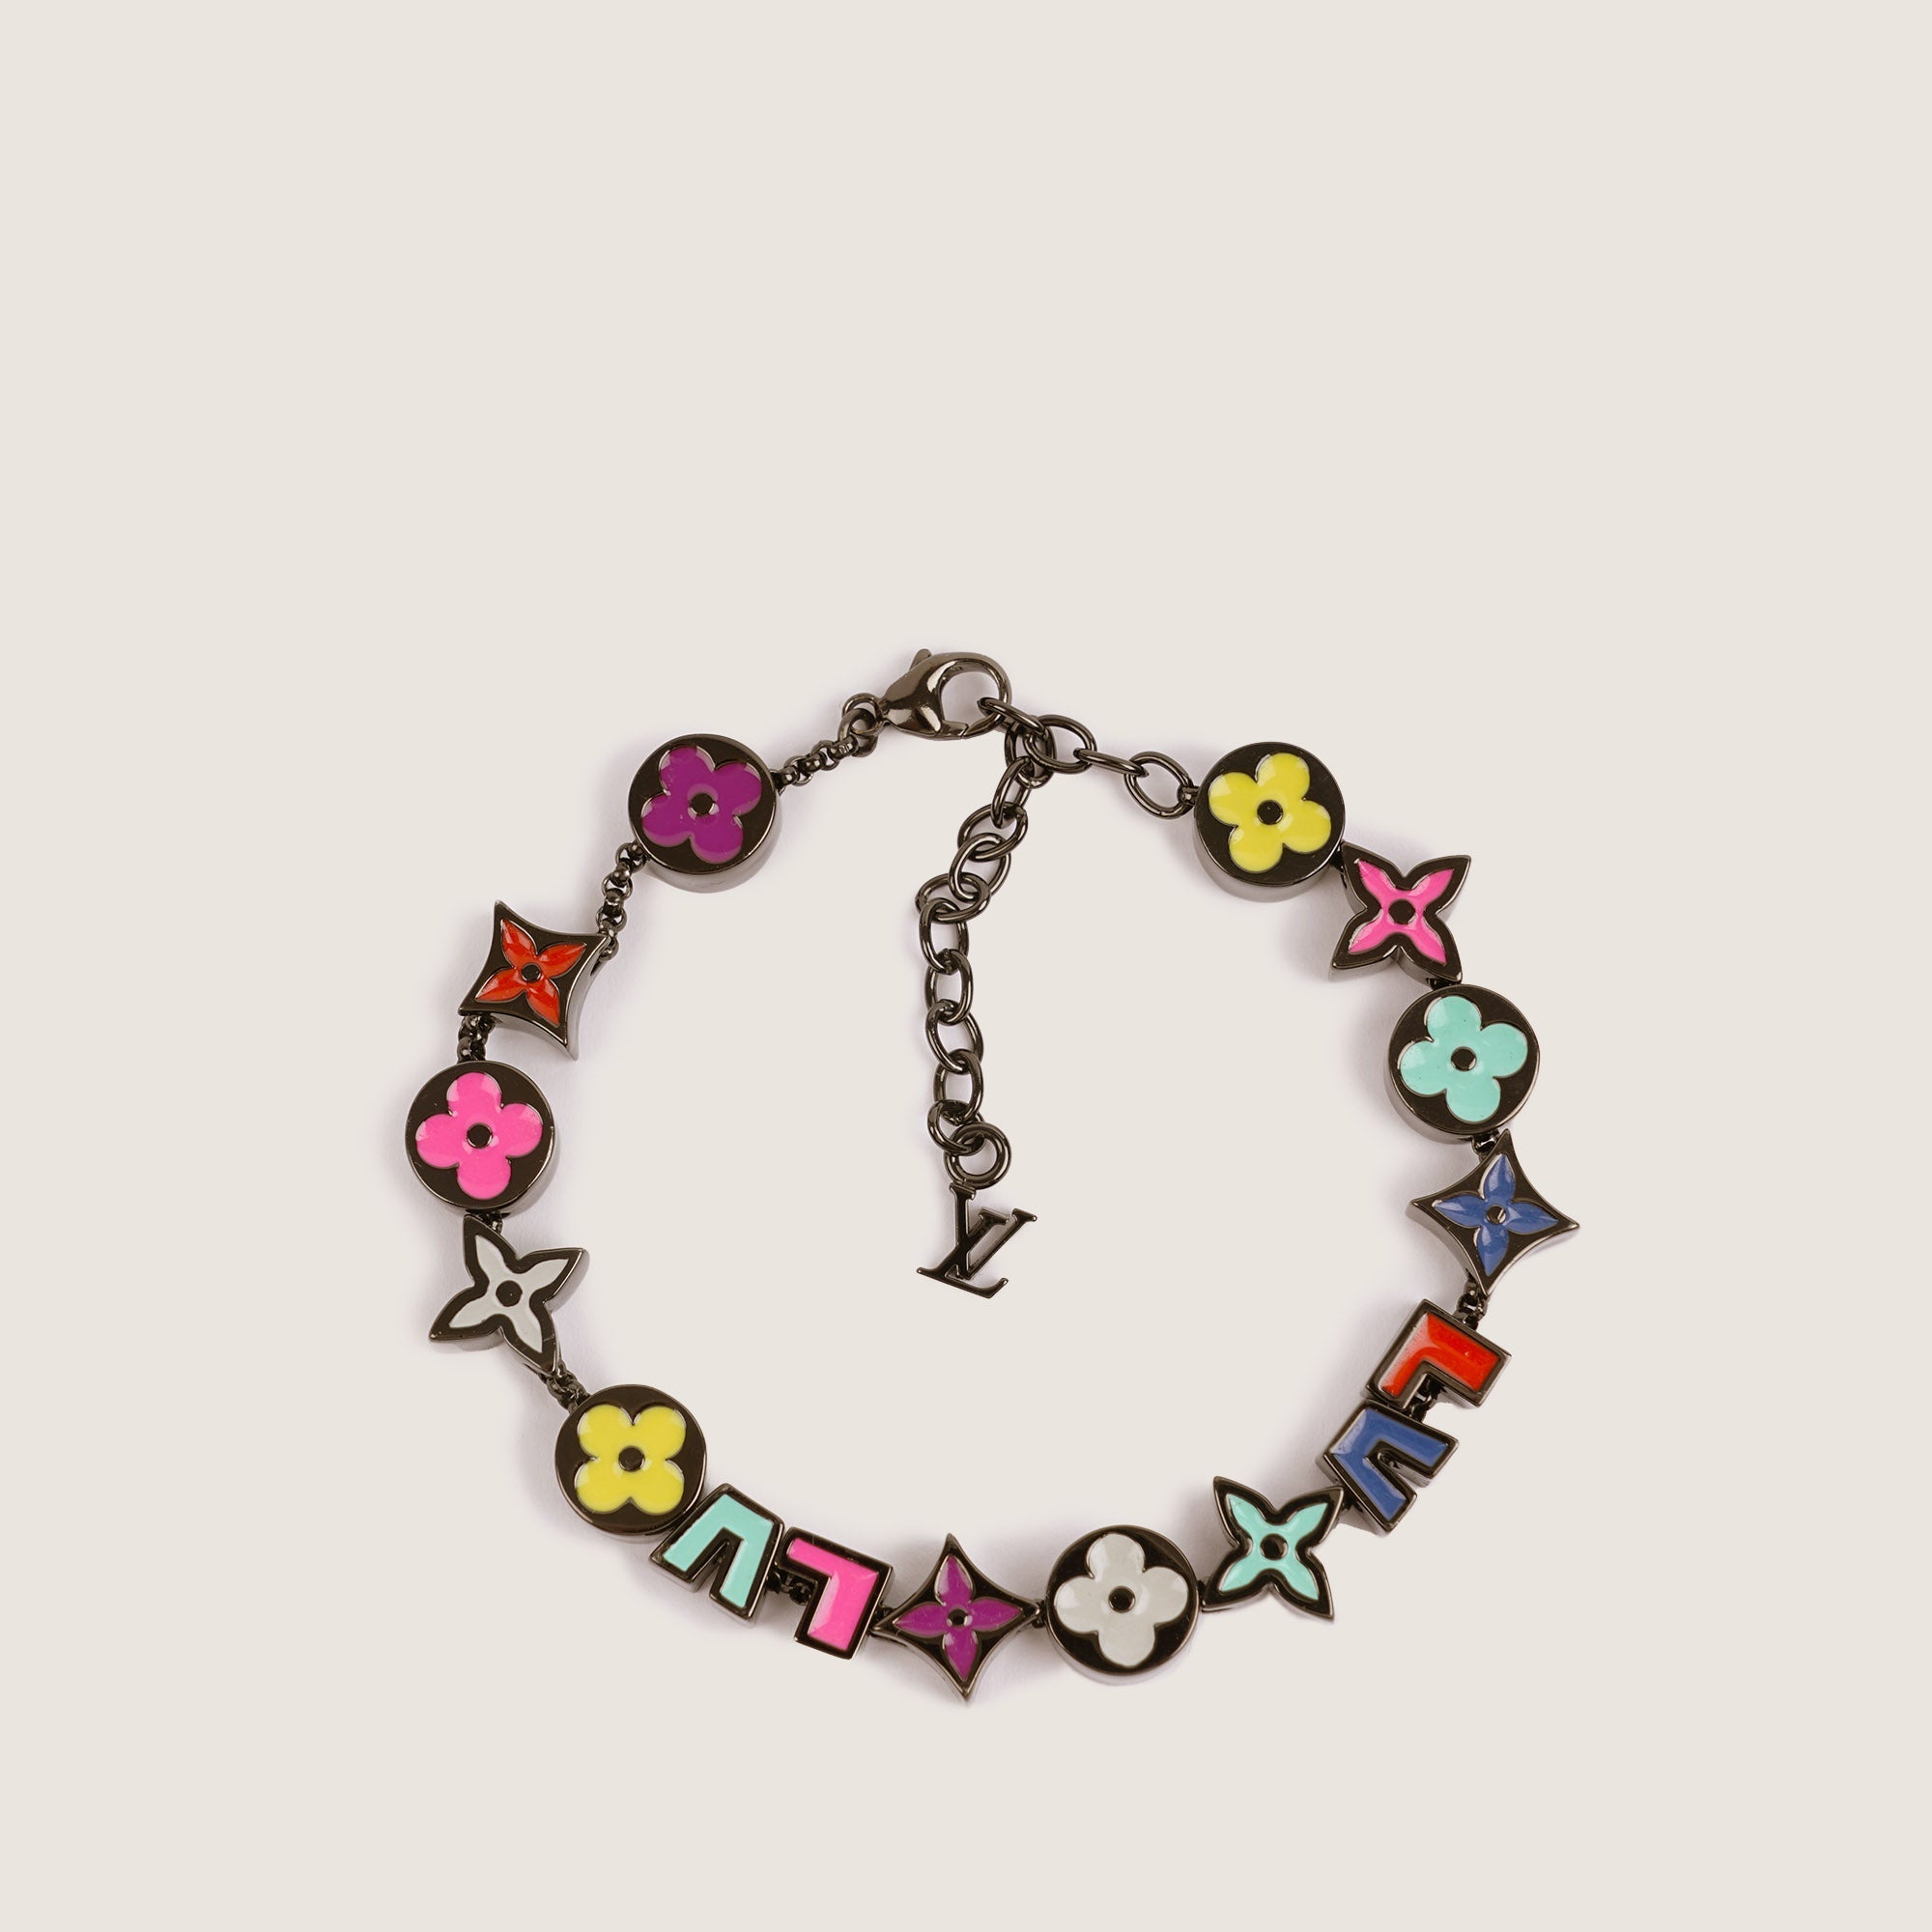 Monogram Party Bracelet - LOUIS VUITTON - Affordable Luxury image